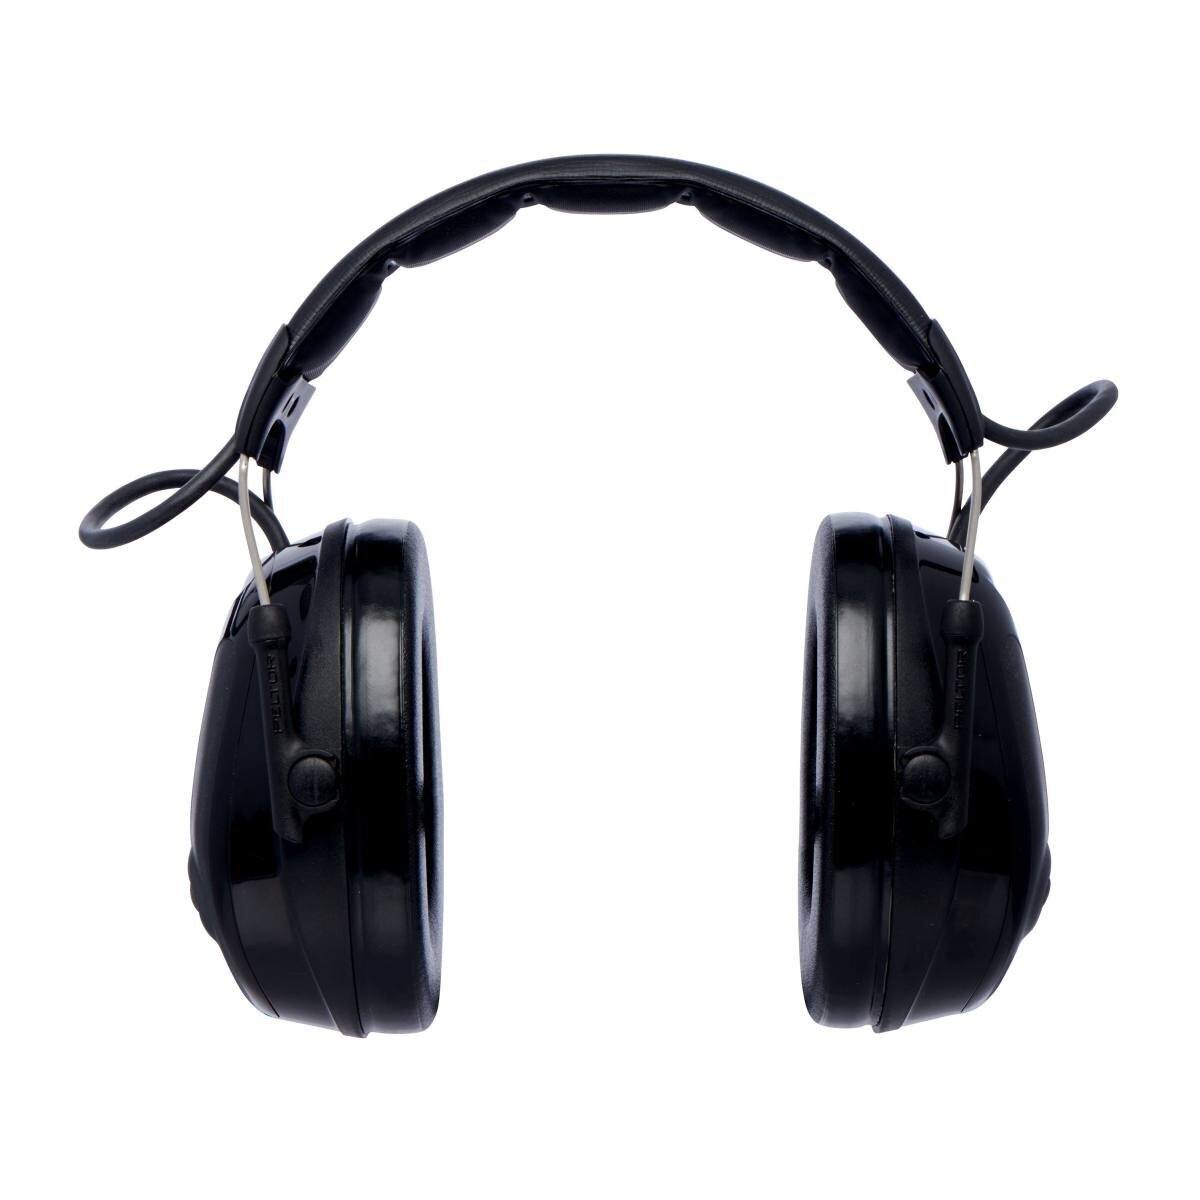 3M Peltor ProTac III Slim Gehörschutz-Headset, schwarz, Kopfbügel, mit aktiver, pegelabhängiger Dämmtechnologie zum Wahrnehmen von Umgebungsgeräuschen, SNR = 26 dB, schwarz